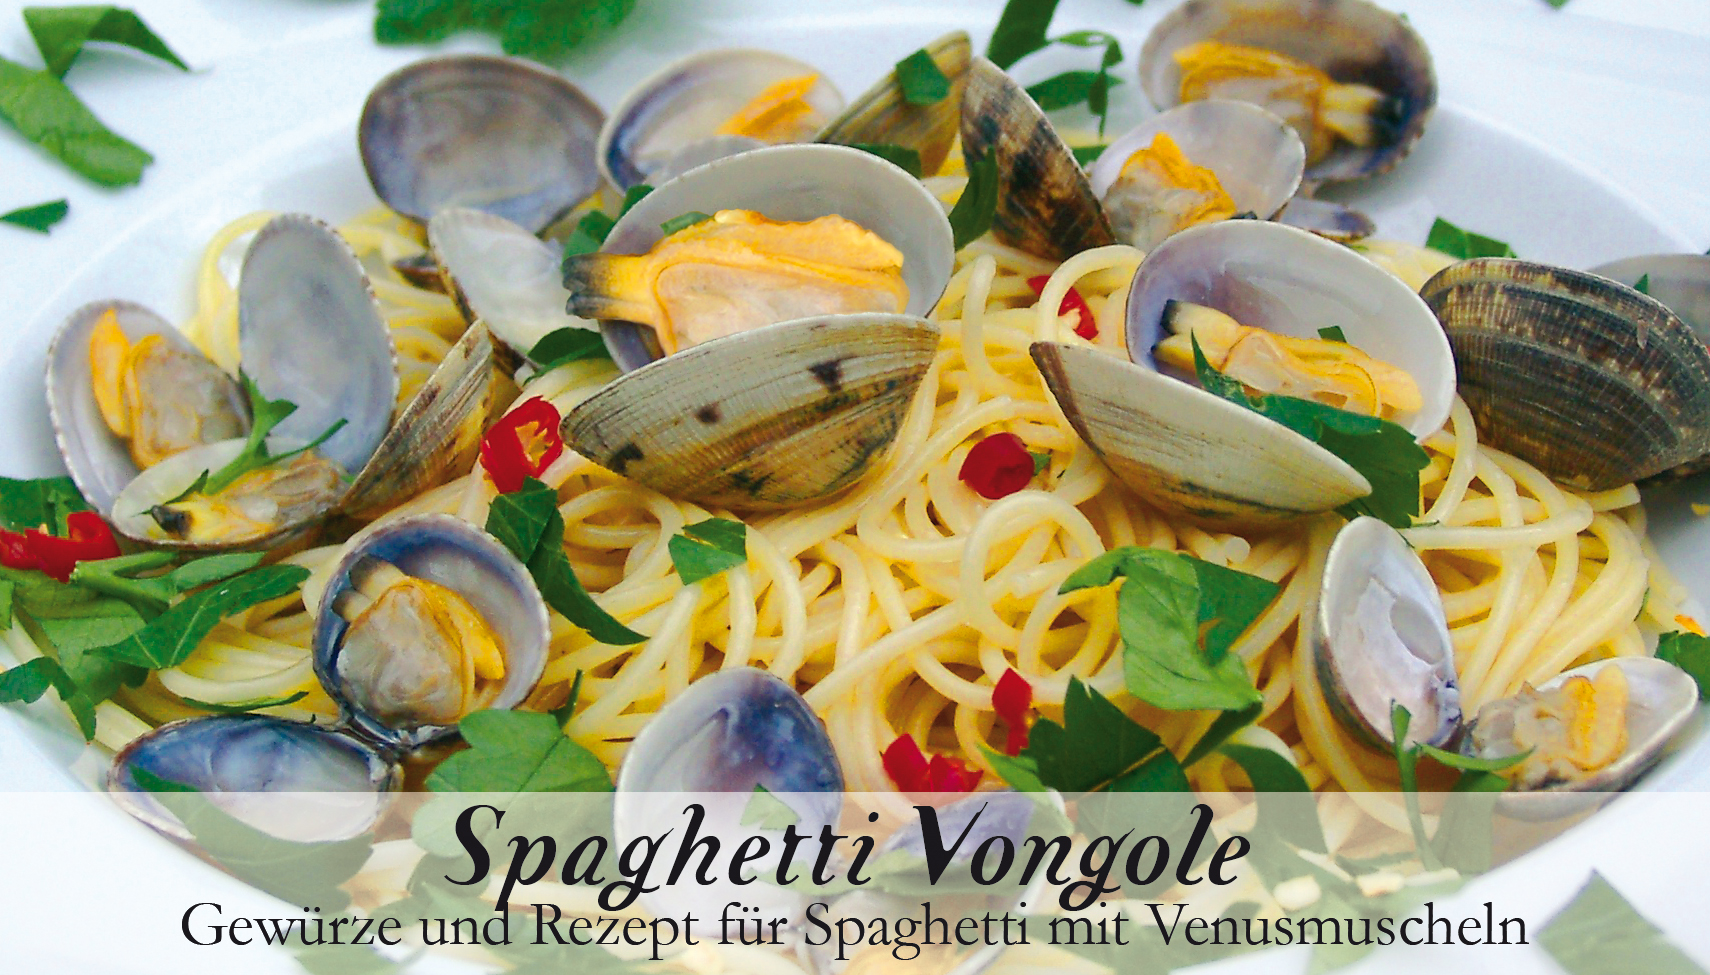 Spaghetti Vongole-Gewürzkasten